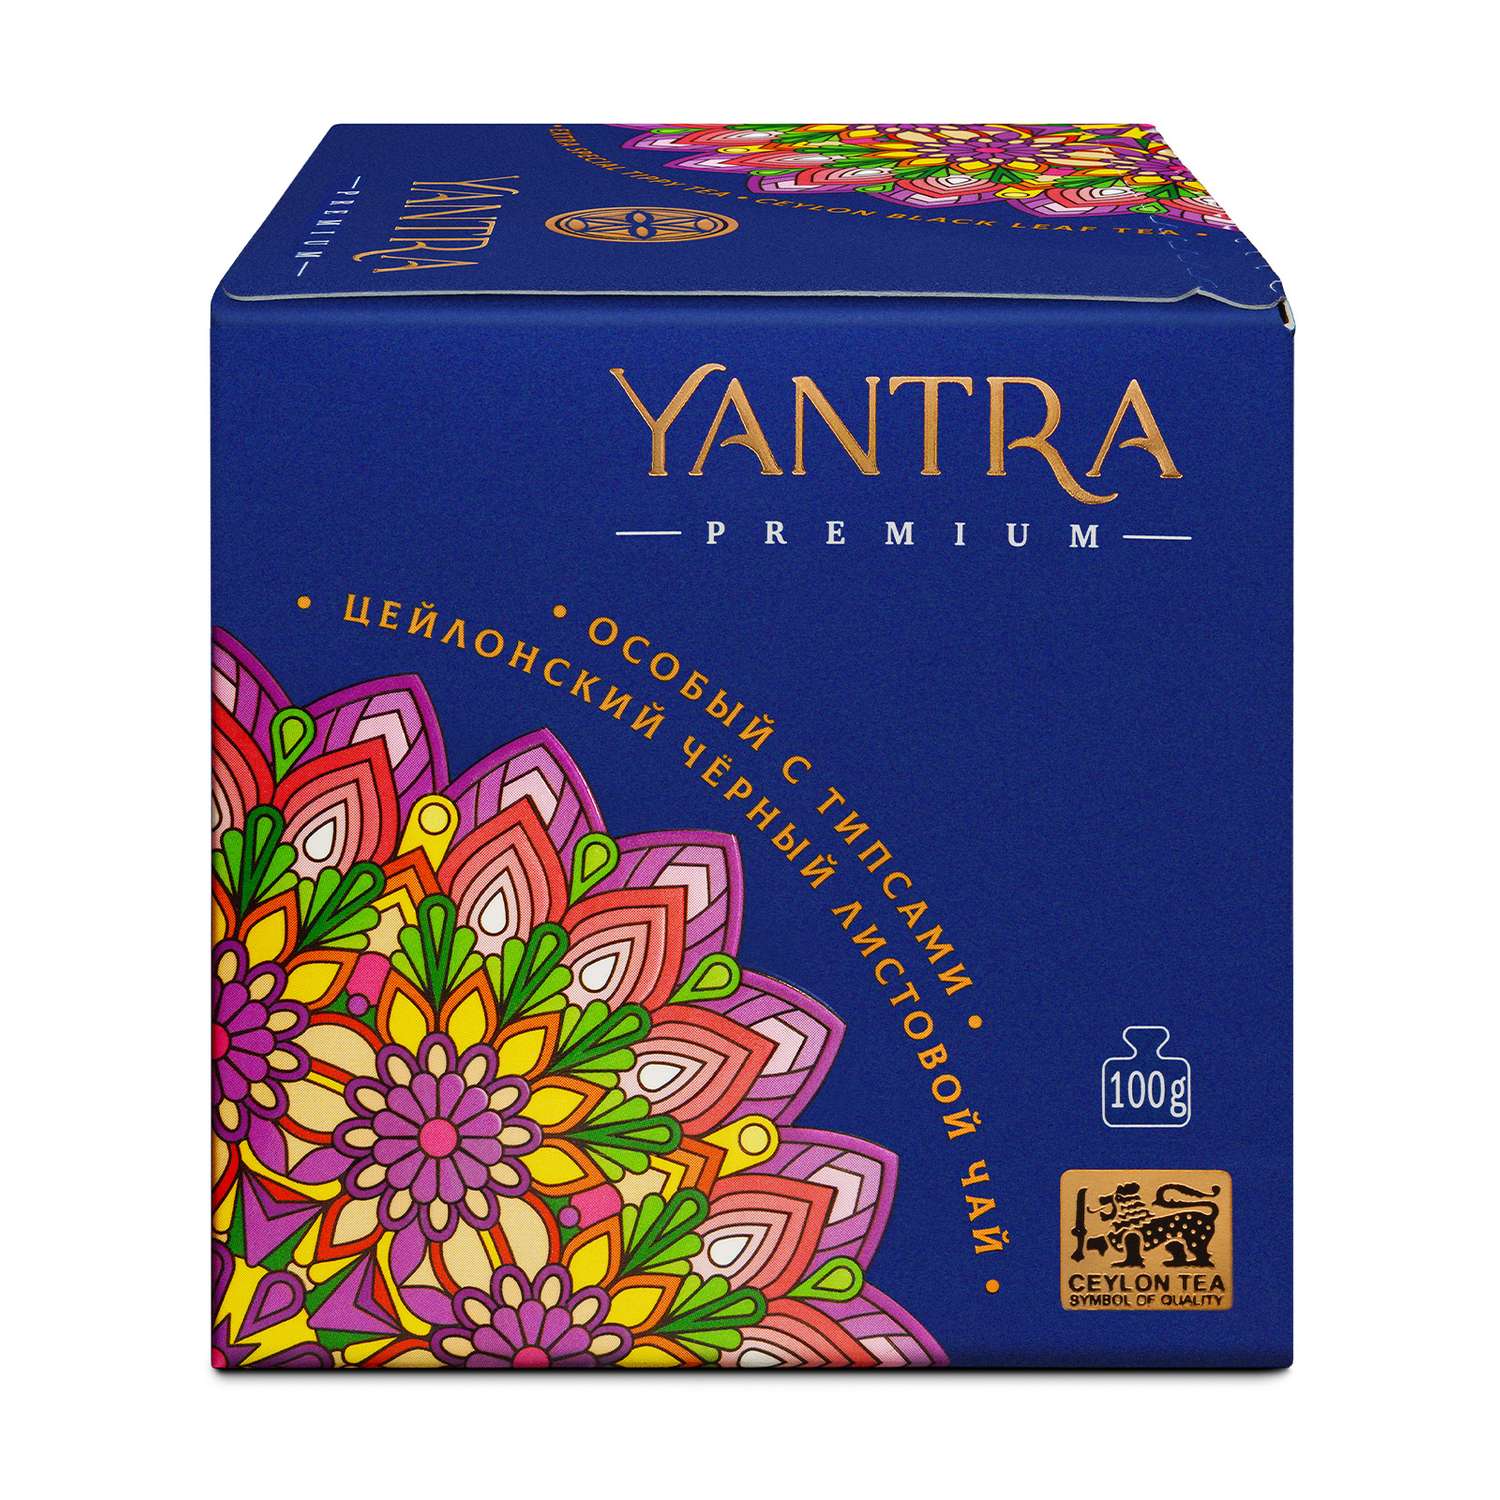 Чай Премиум Yantra чёрный листовой с типсами стандарт Extra Special Tippy Tea 100 г - фото 5